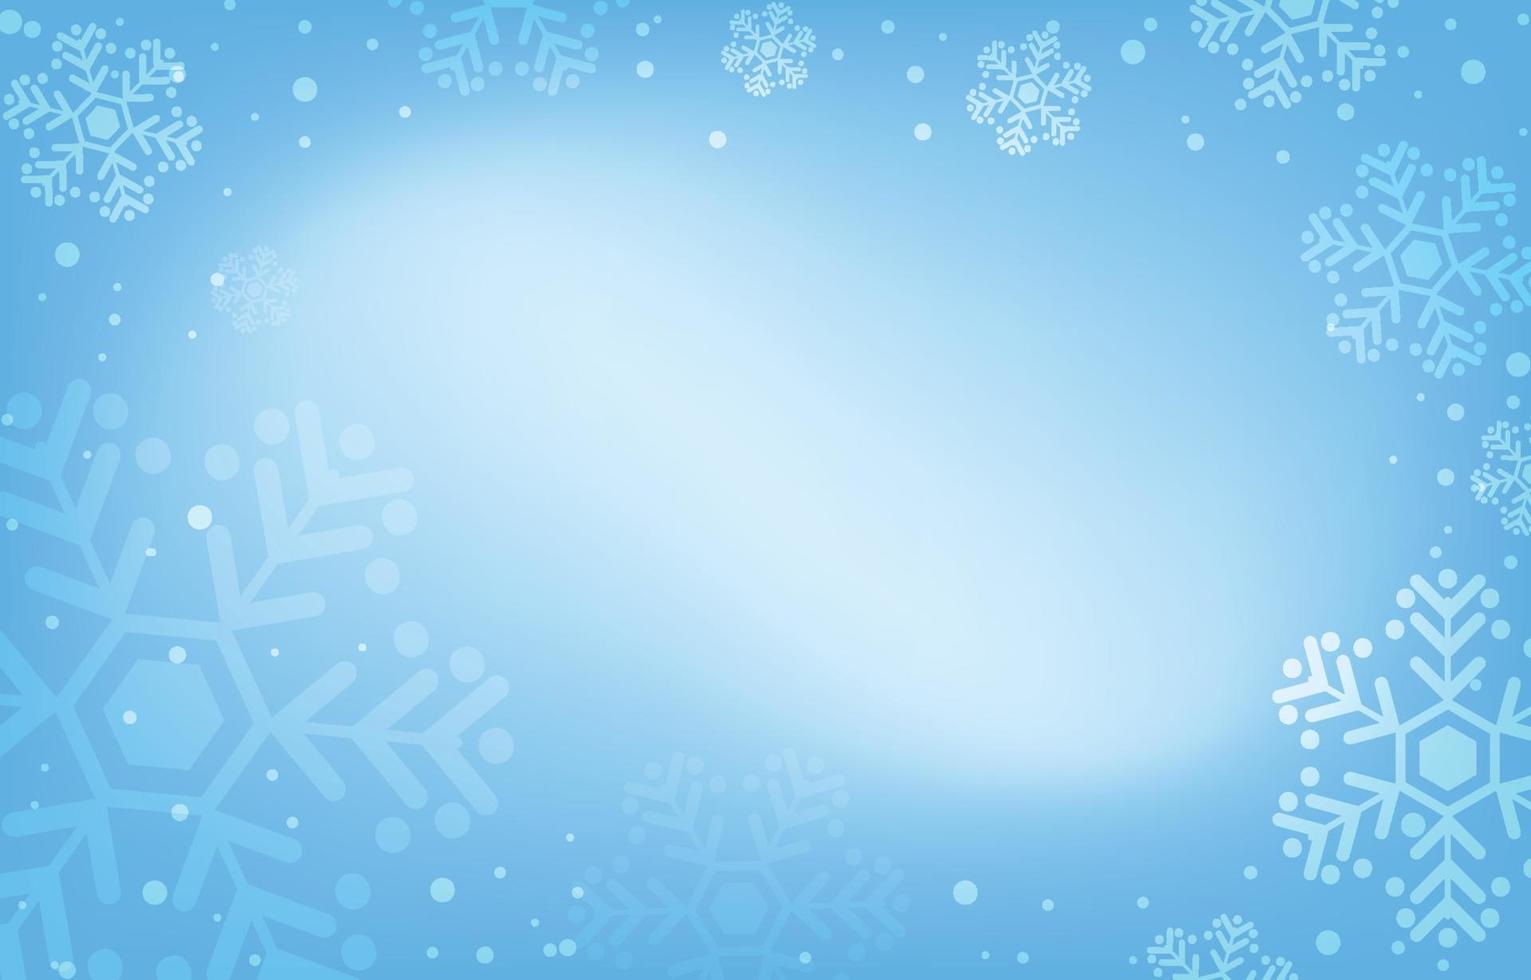 vecteur de fond de chute de neige. scène bleue et décorée de chutes de flocons de neige. il y a un espace de copie pour la conception. concept d'hiver, de noël et du nouvel an.